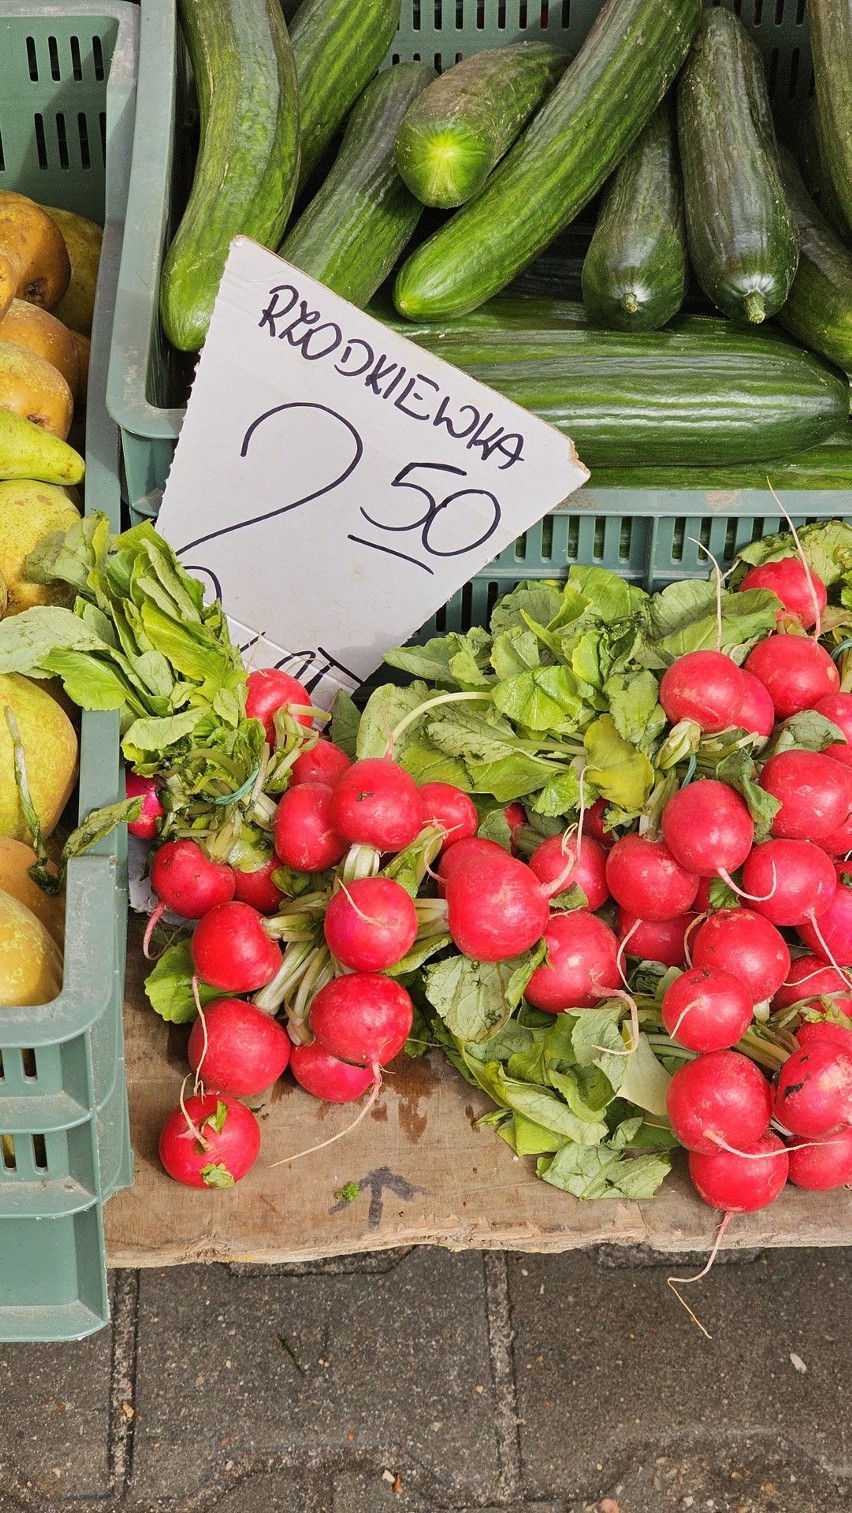 Sprawdziliśmy ceny popularnych warzyw i owoców na targowisku...